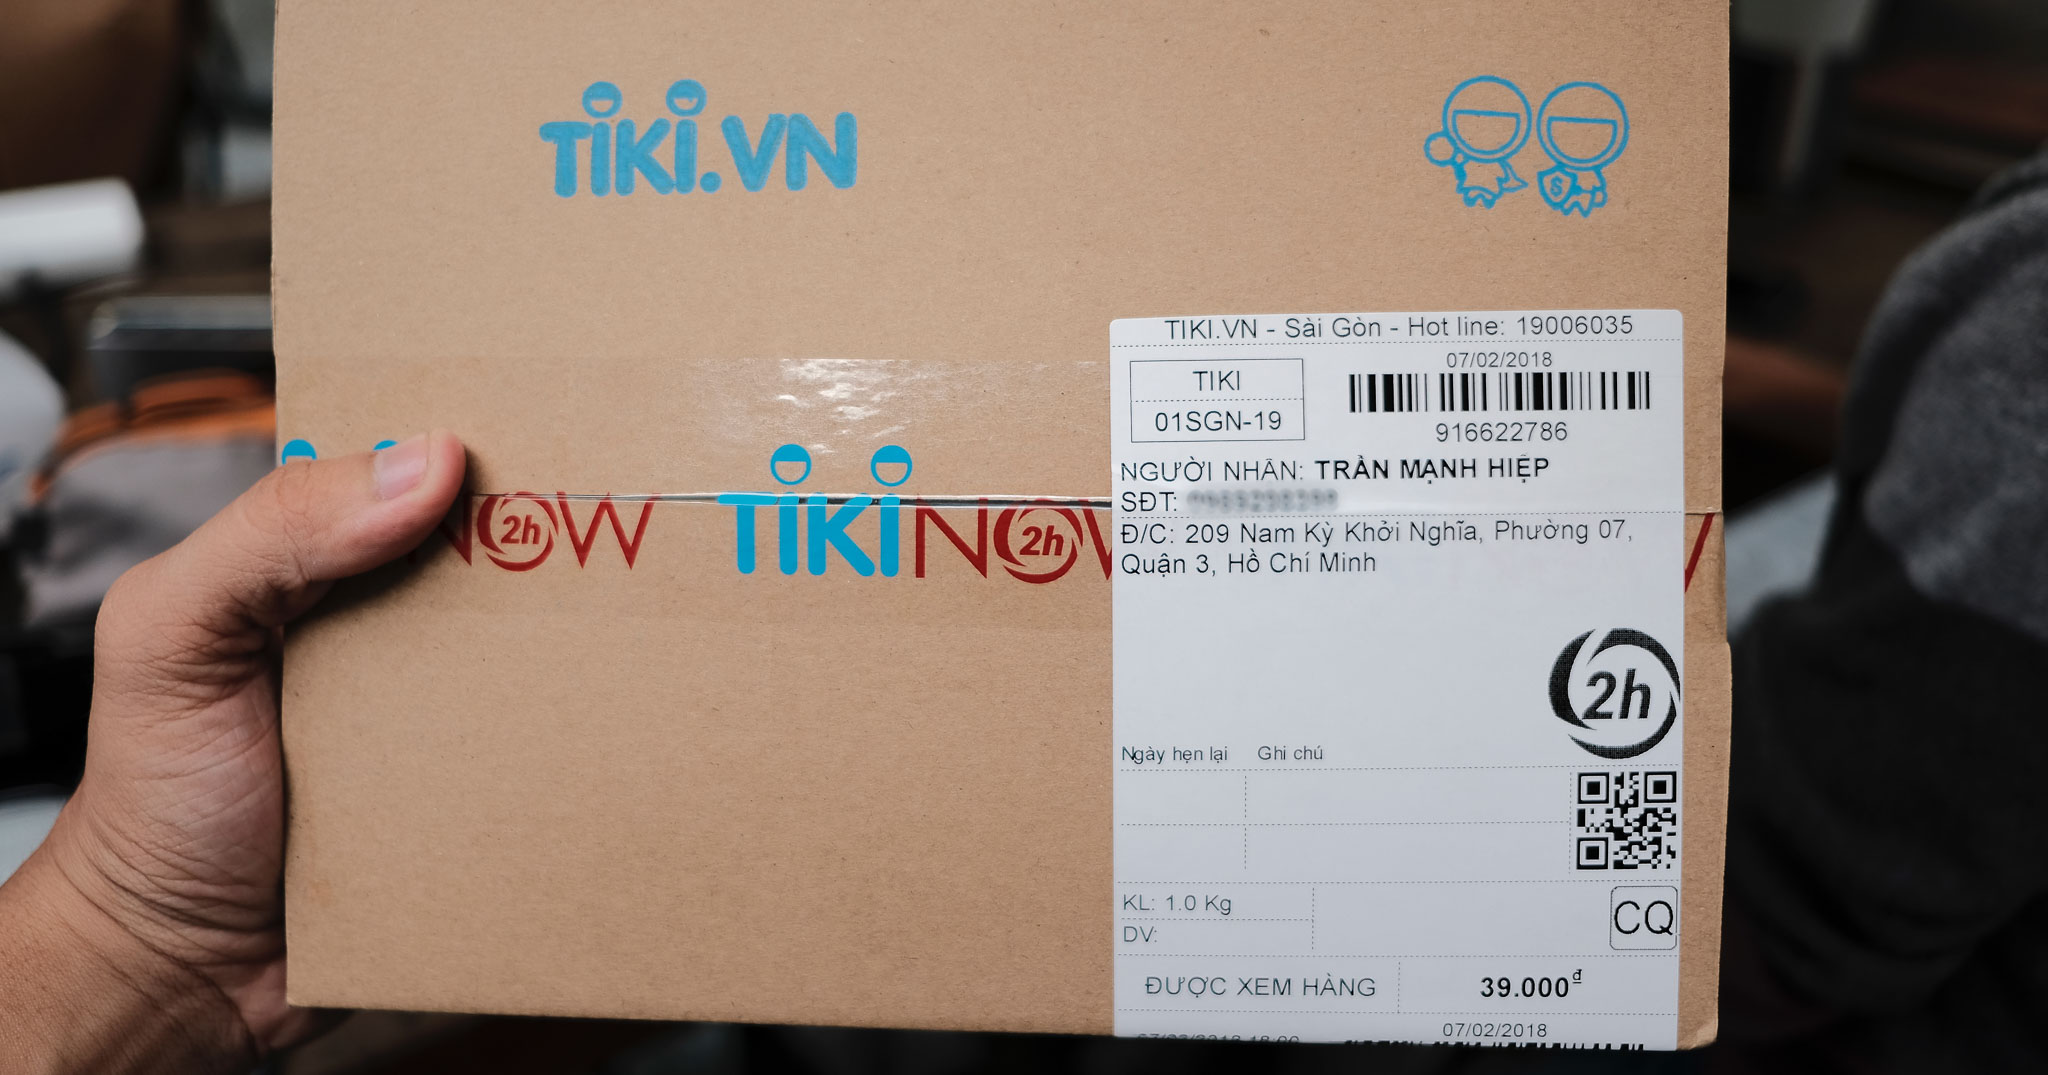 Dùng thử Tikinow: giao hàng trong vòng 2 giờ của Tiki